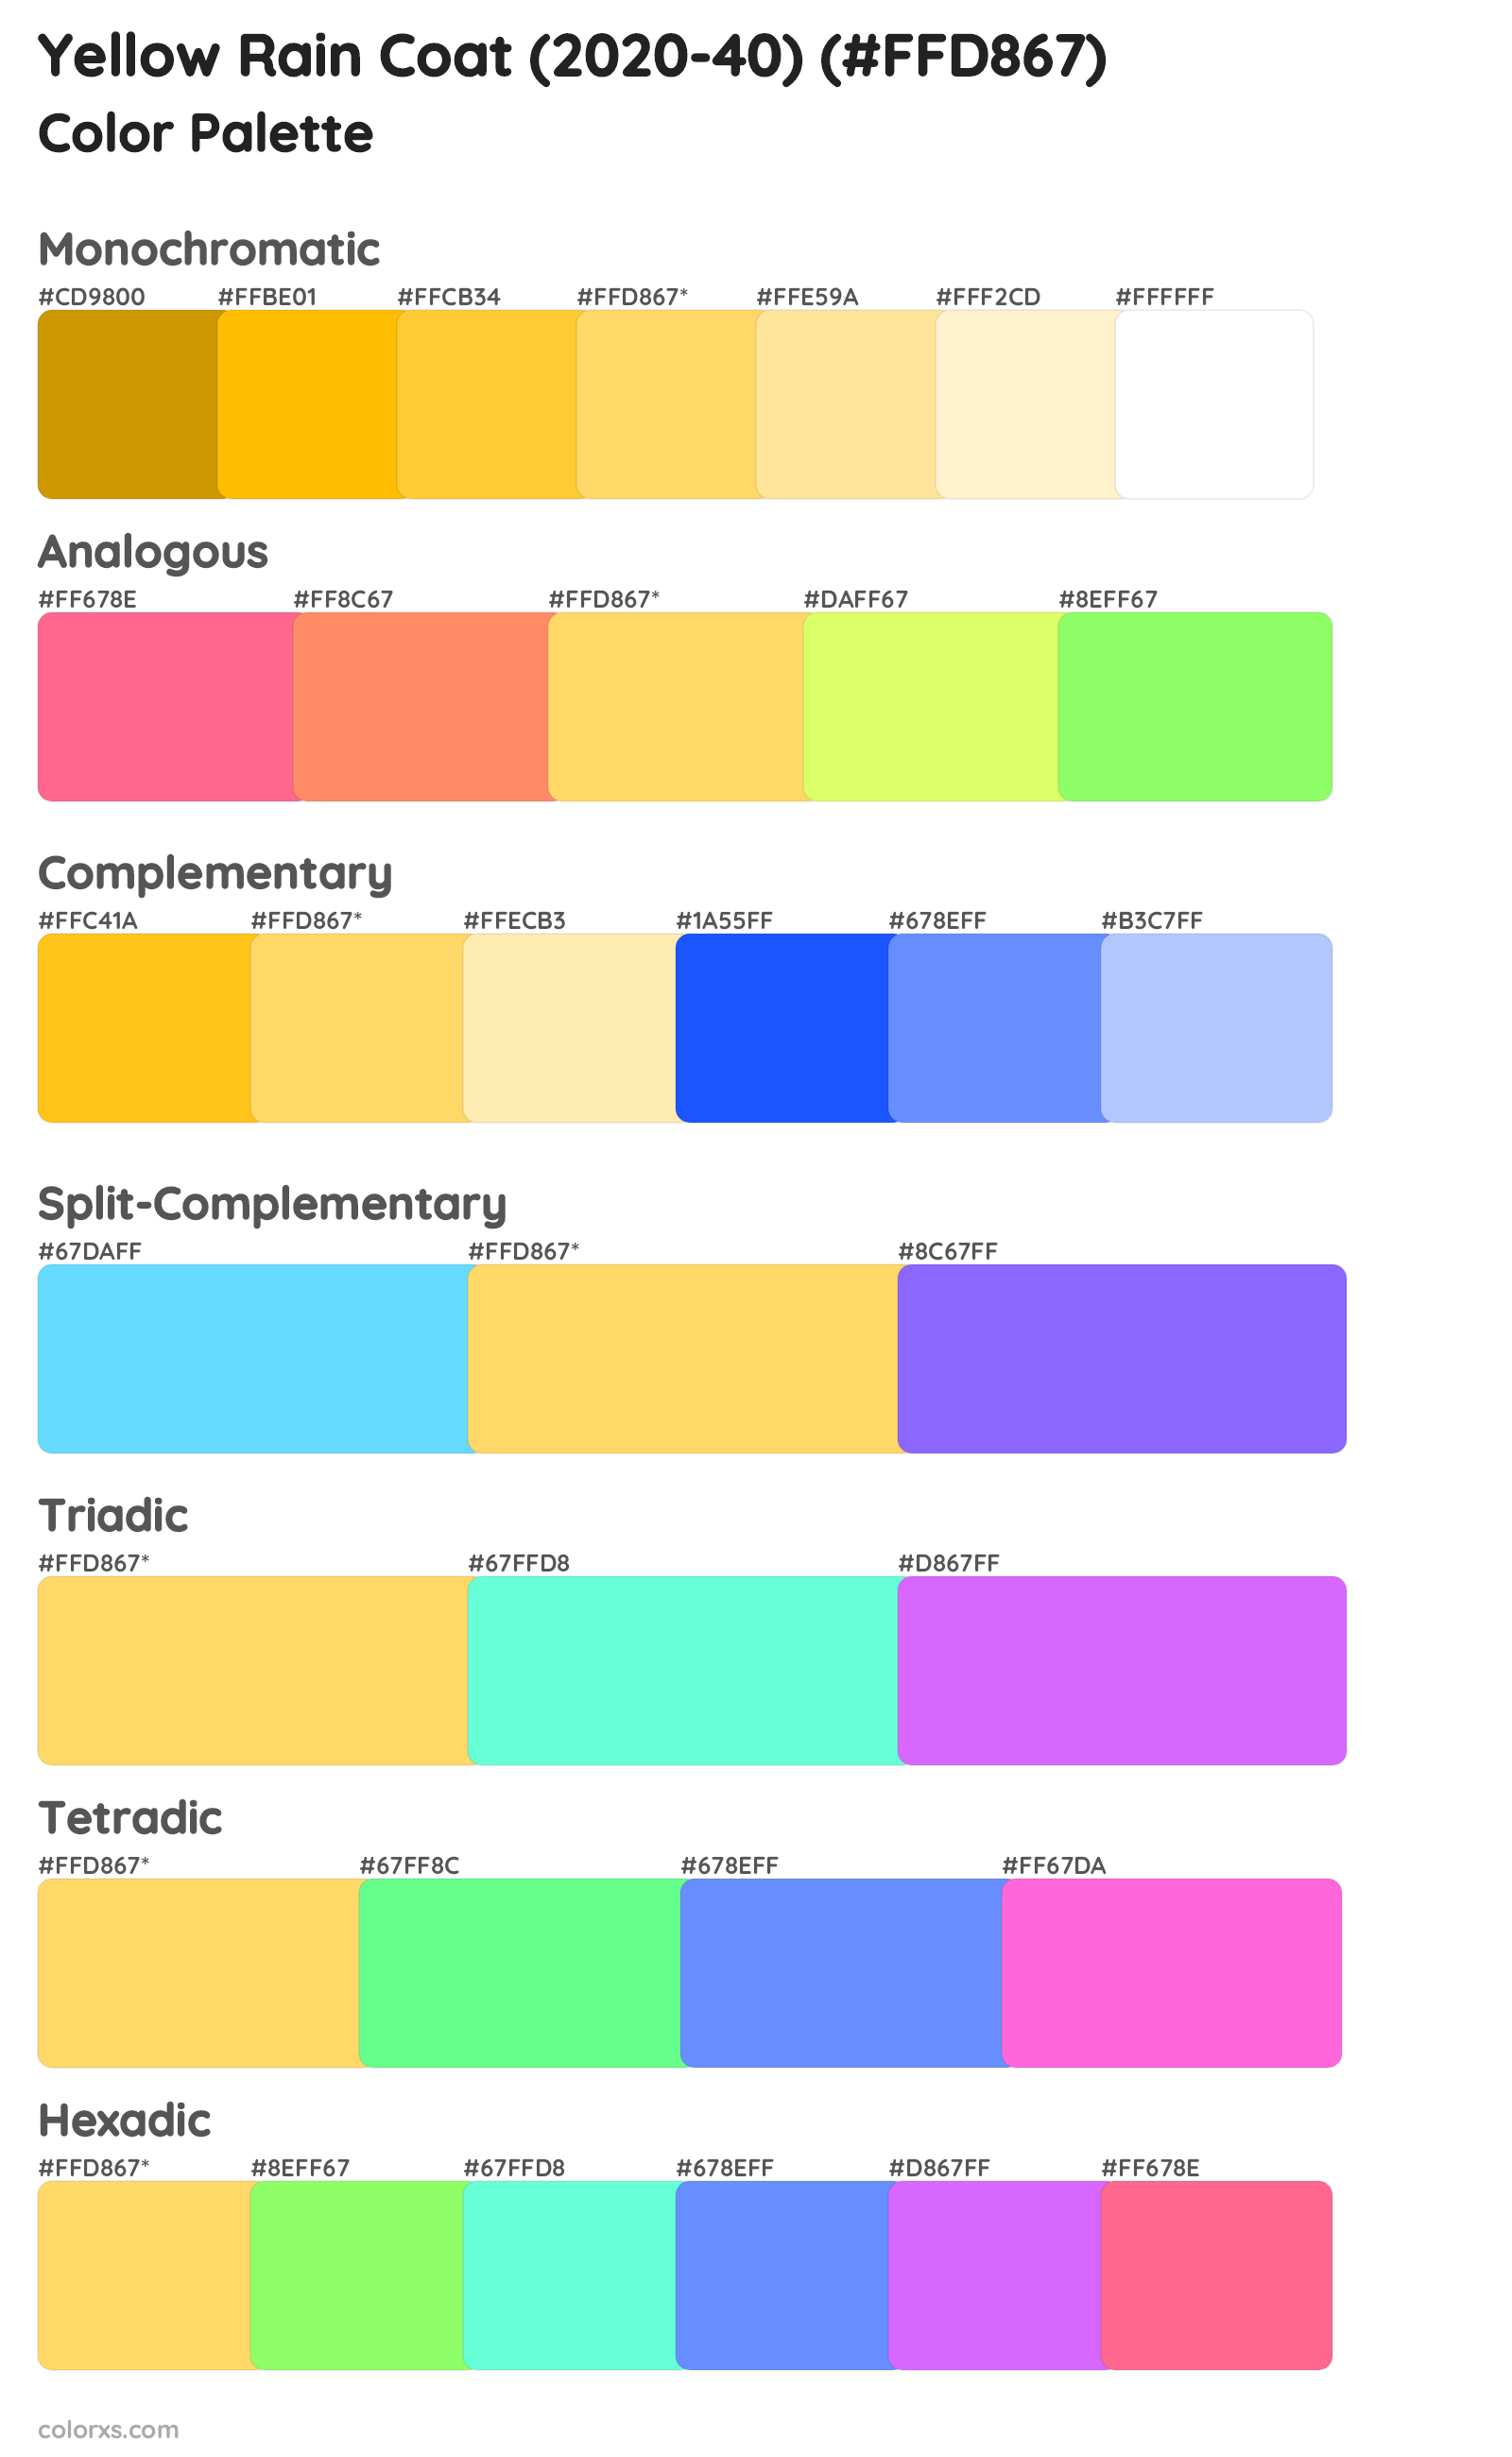 Yellow Rain Coat (2020-40) Color Scheme Palettes